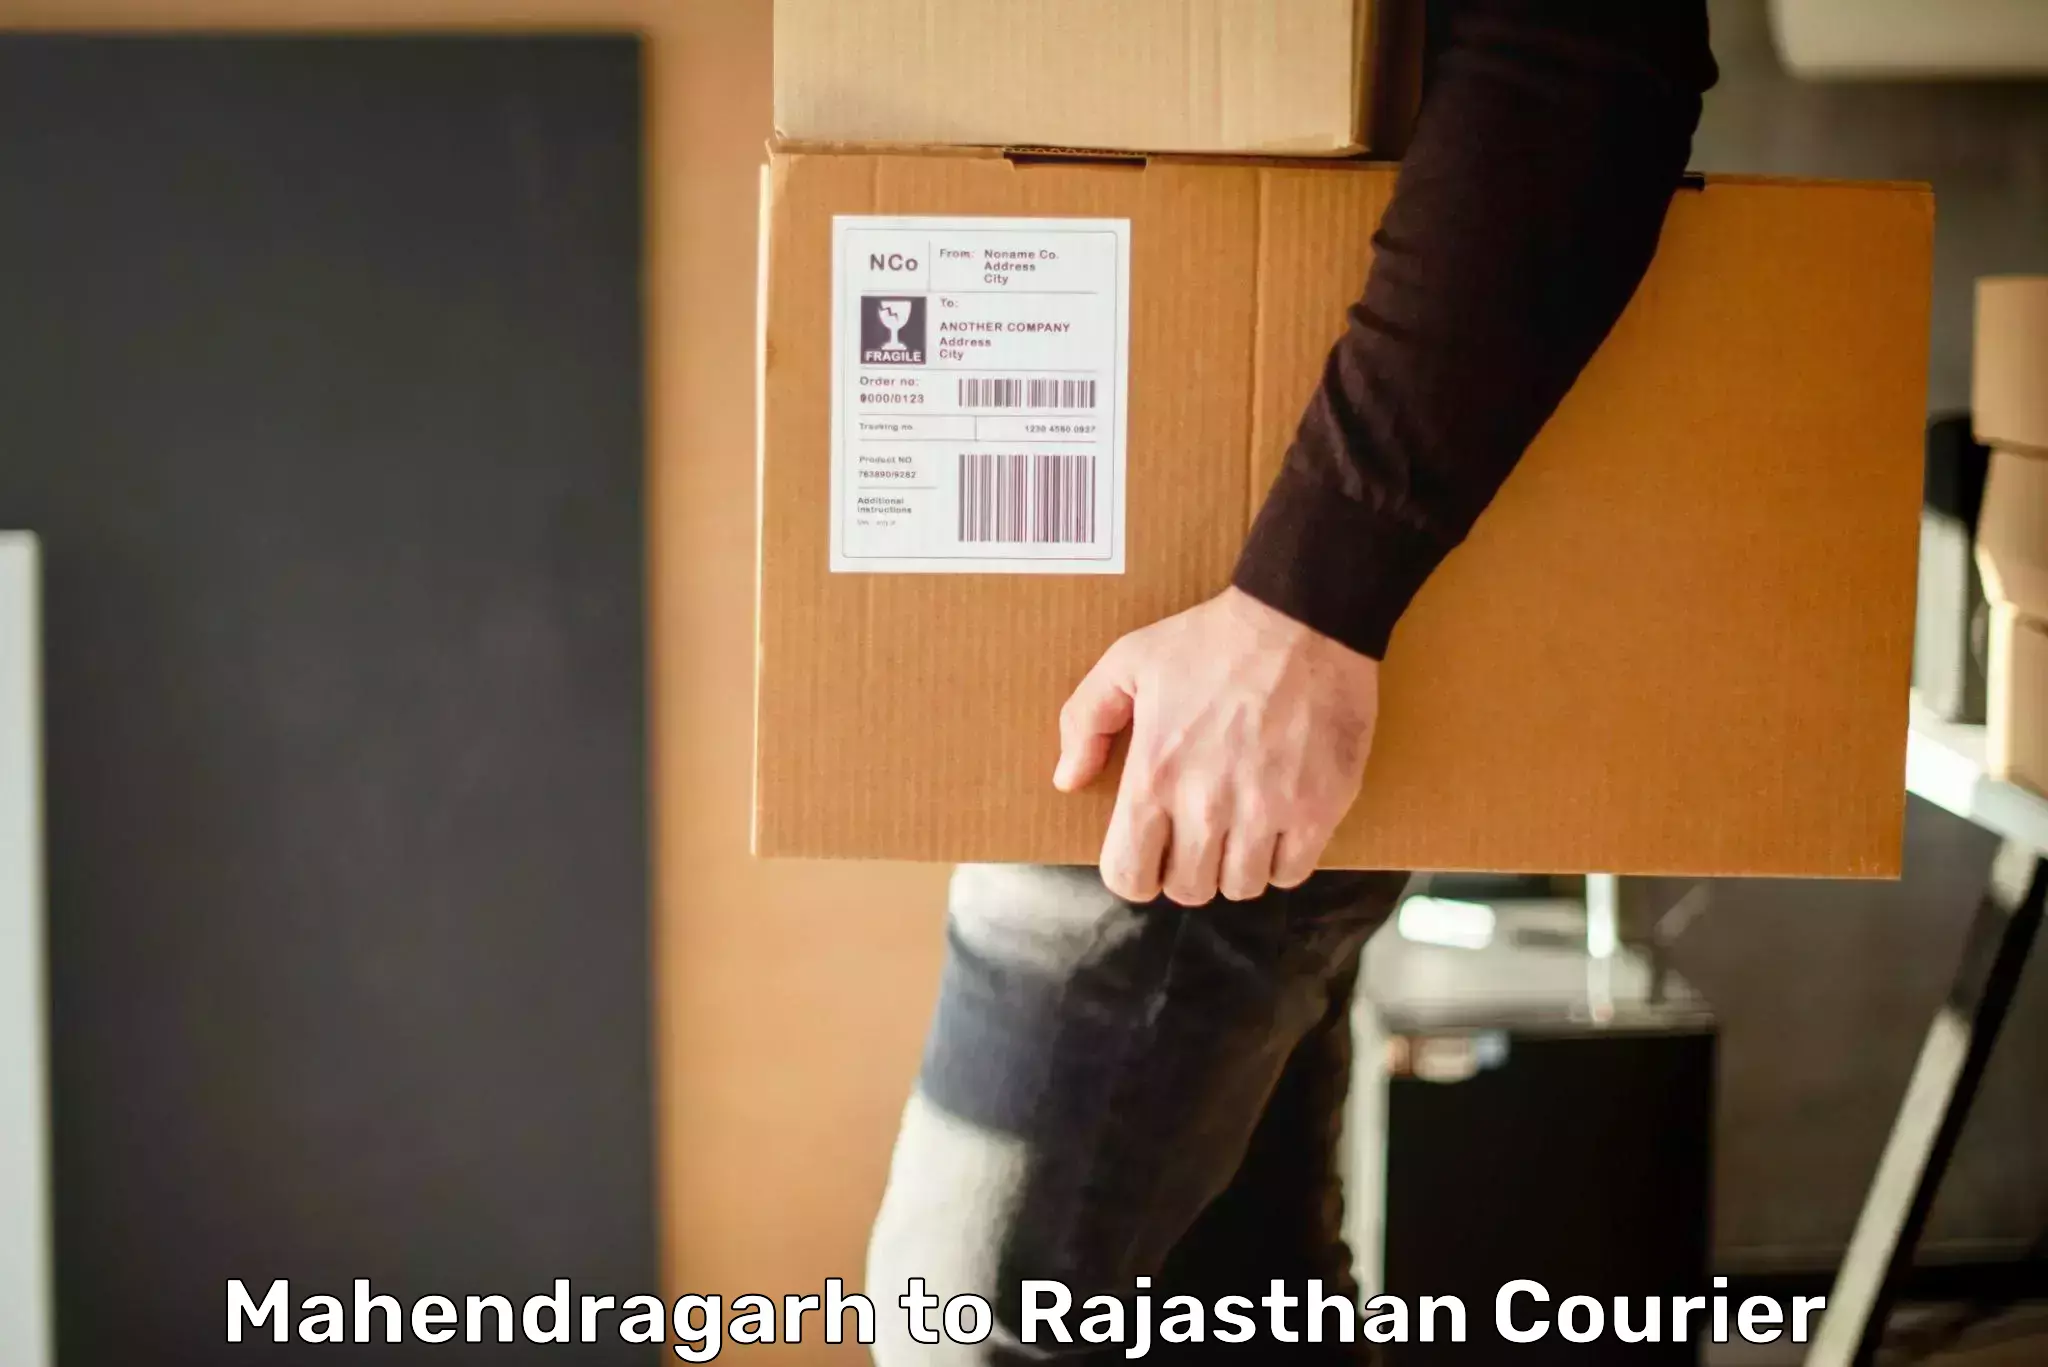 Urban courier service Mahendragarh to Kotputli